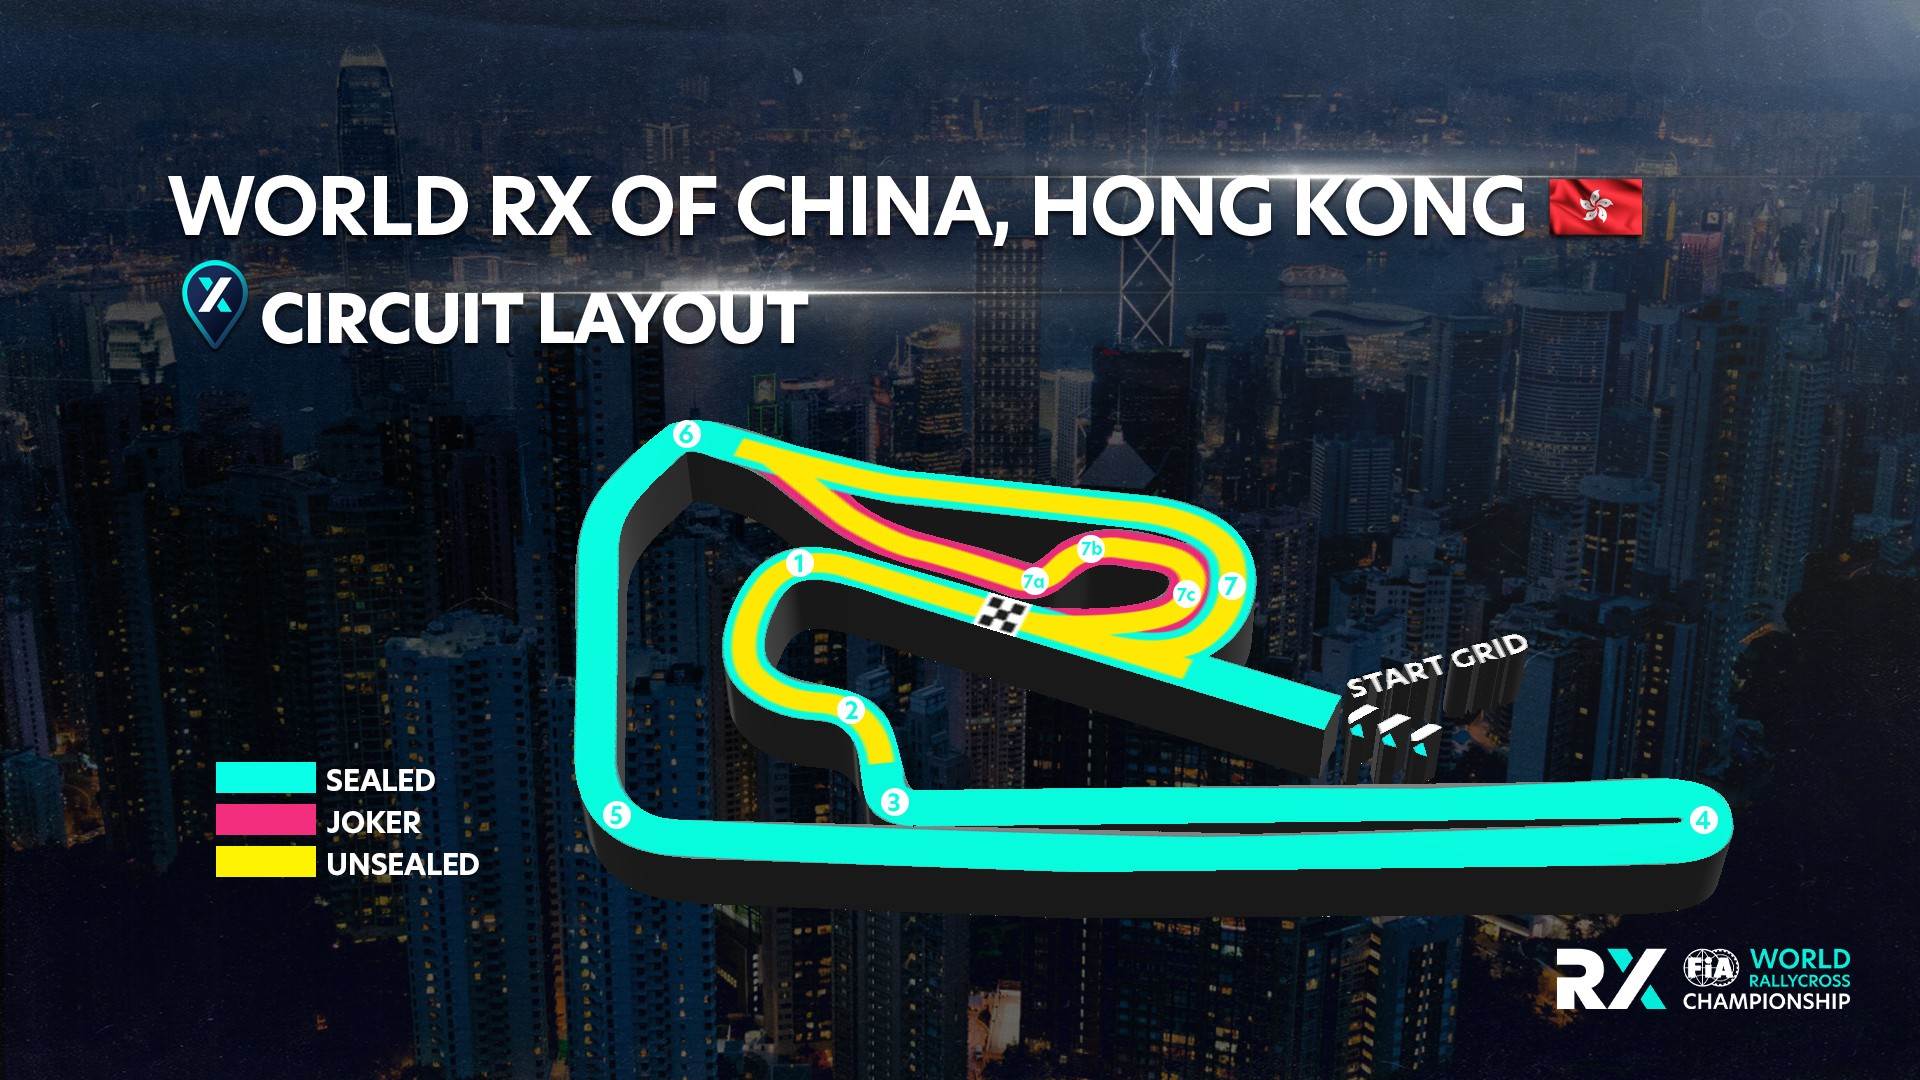 World RX of China, Hongkong